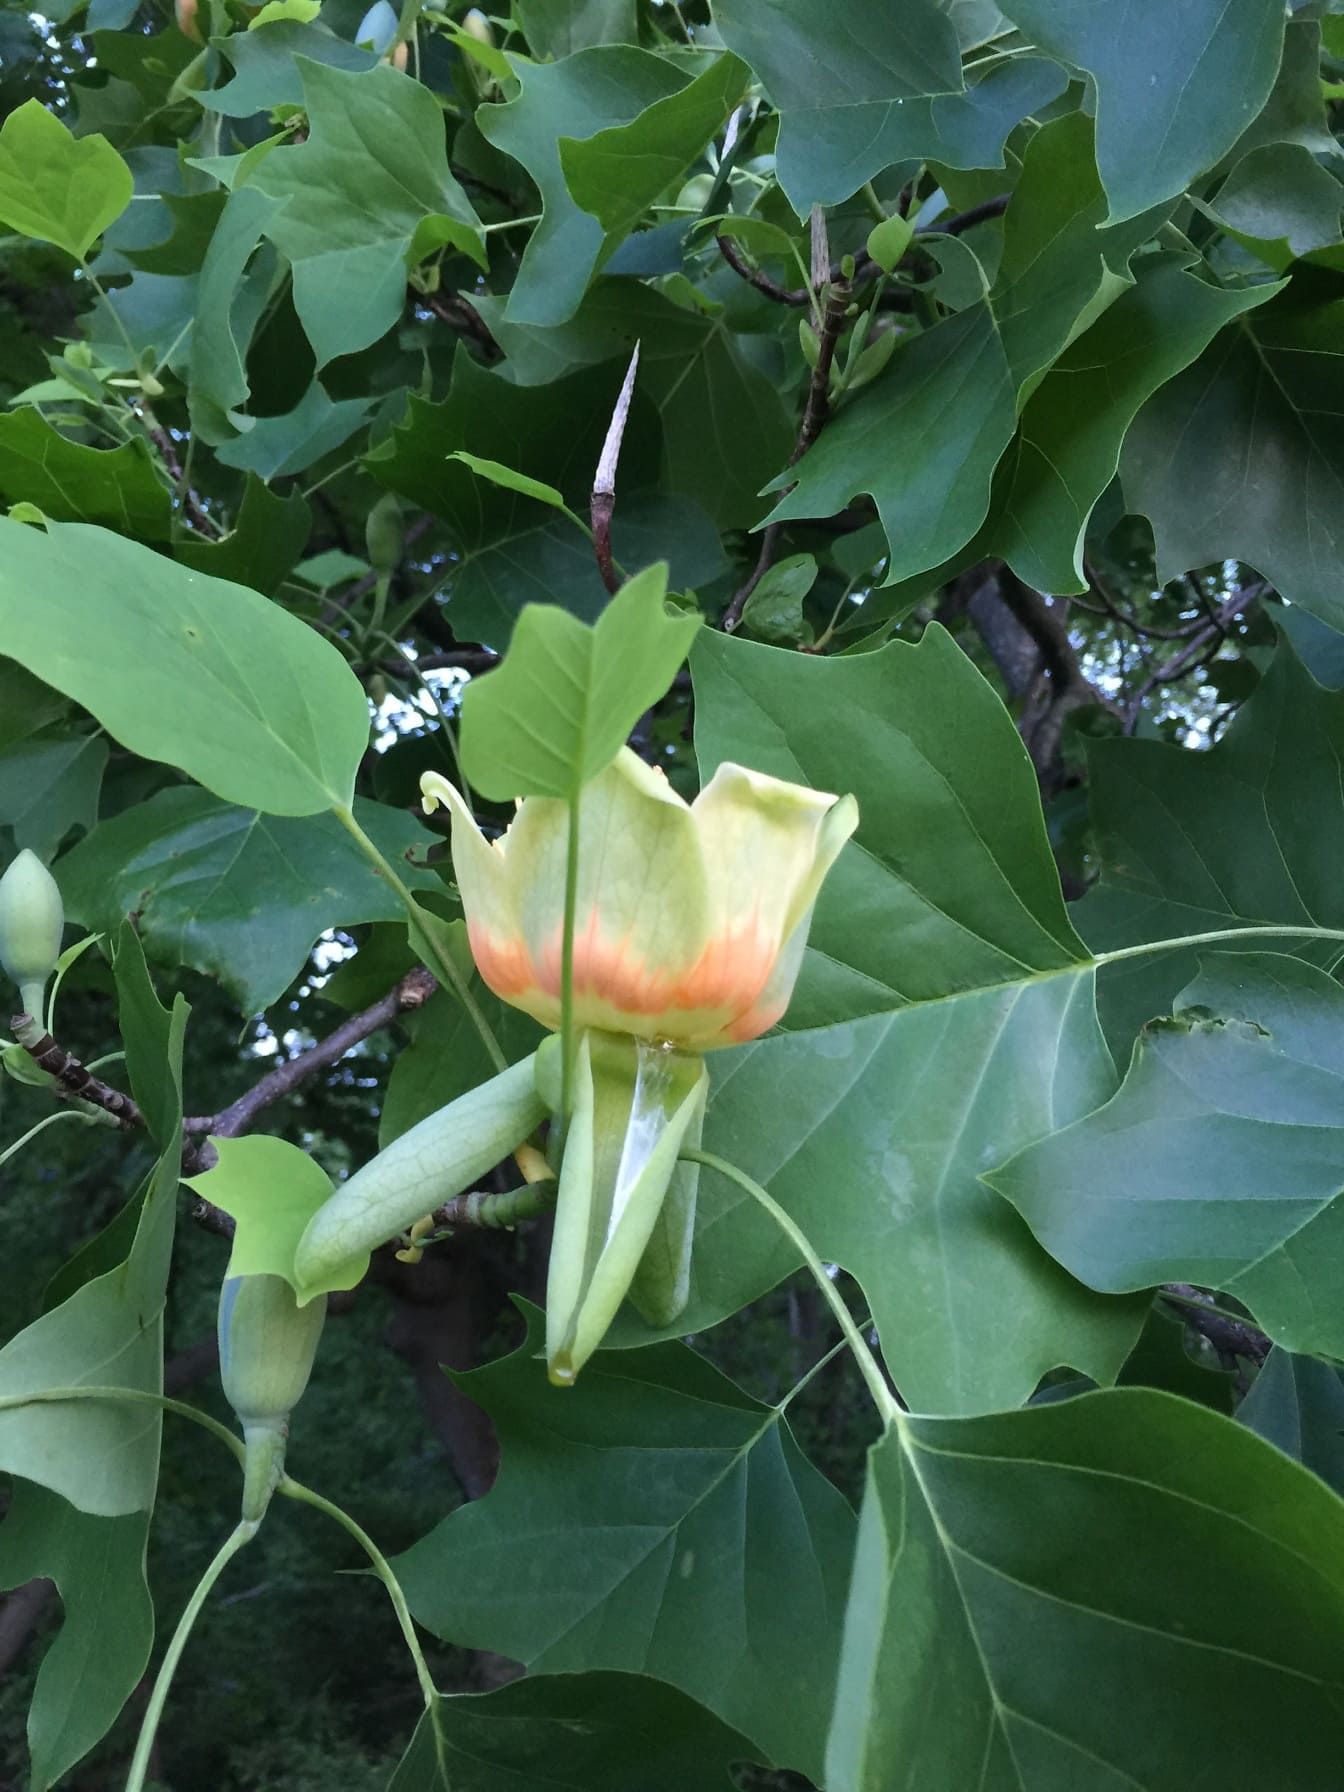 郁金香树 – 黄色杨树 (Liriodendron tulipifera) 淡黄色花朵